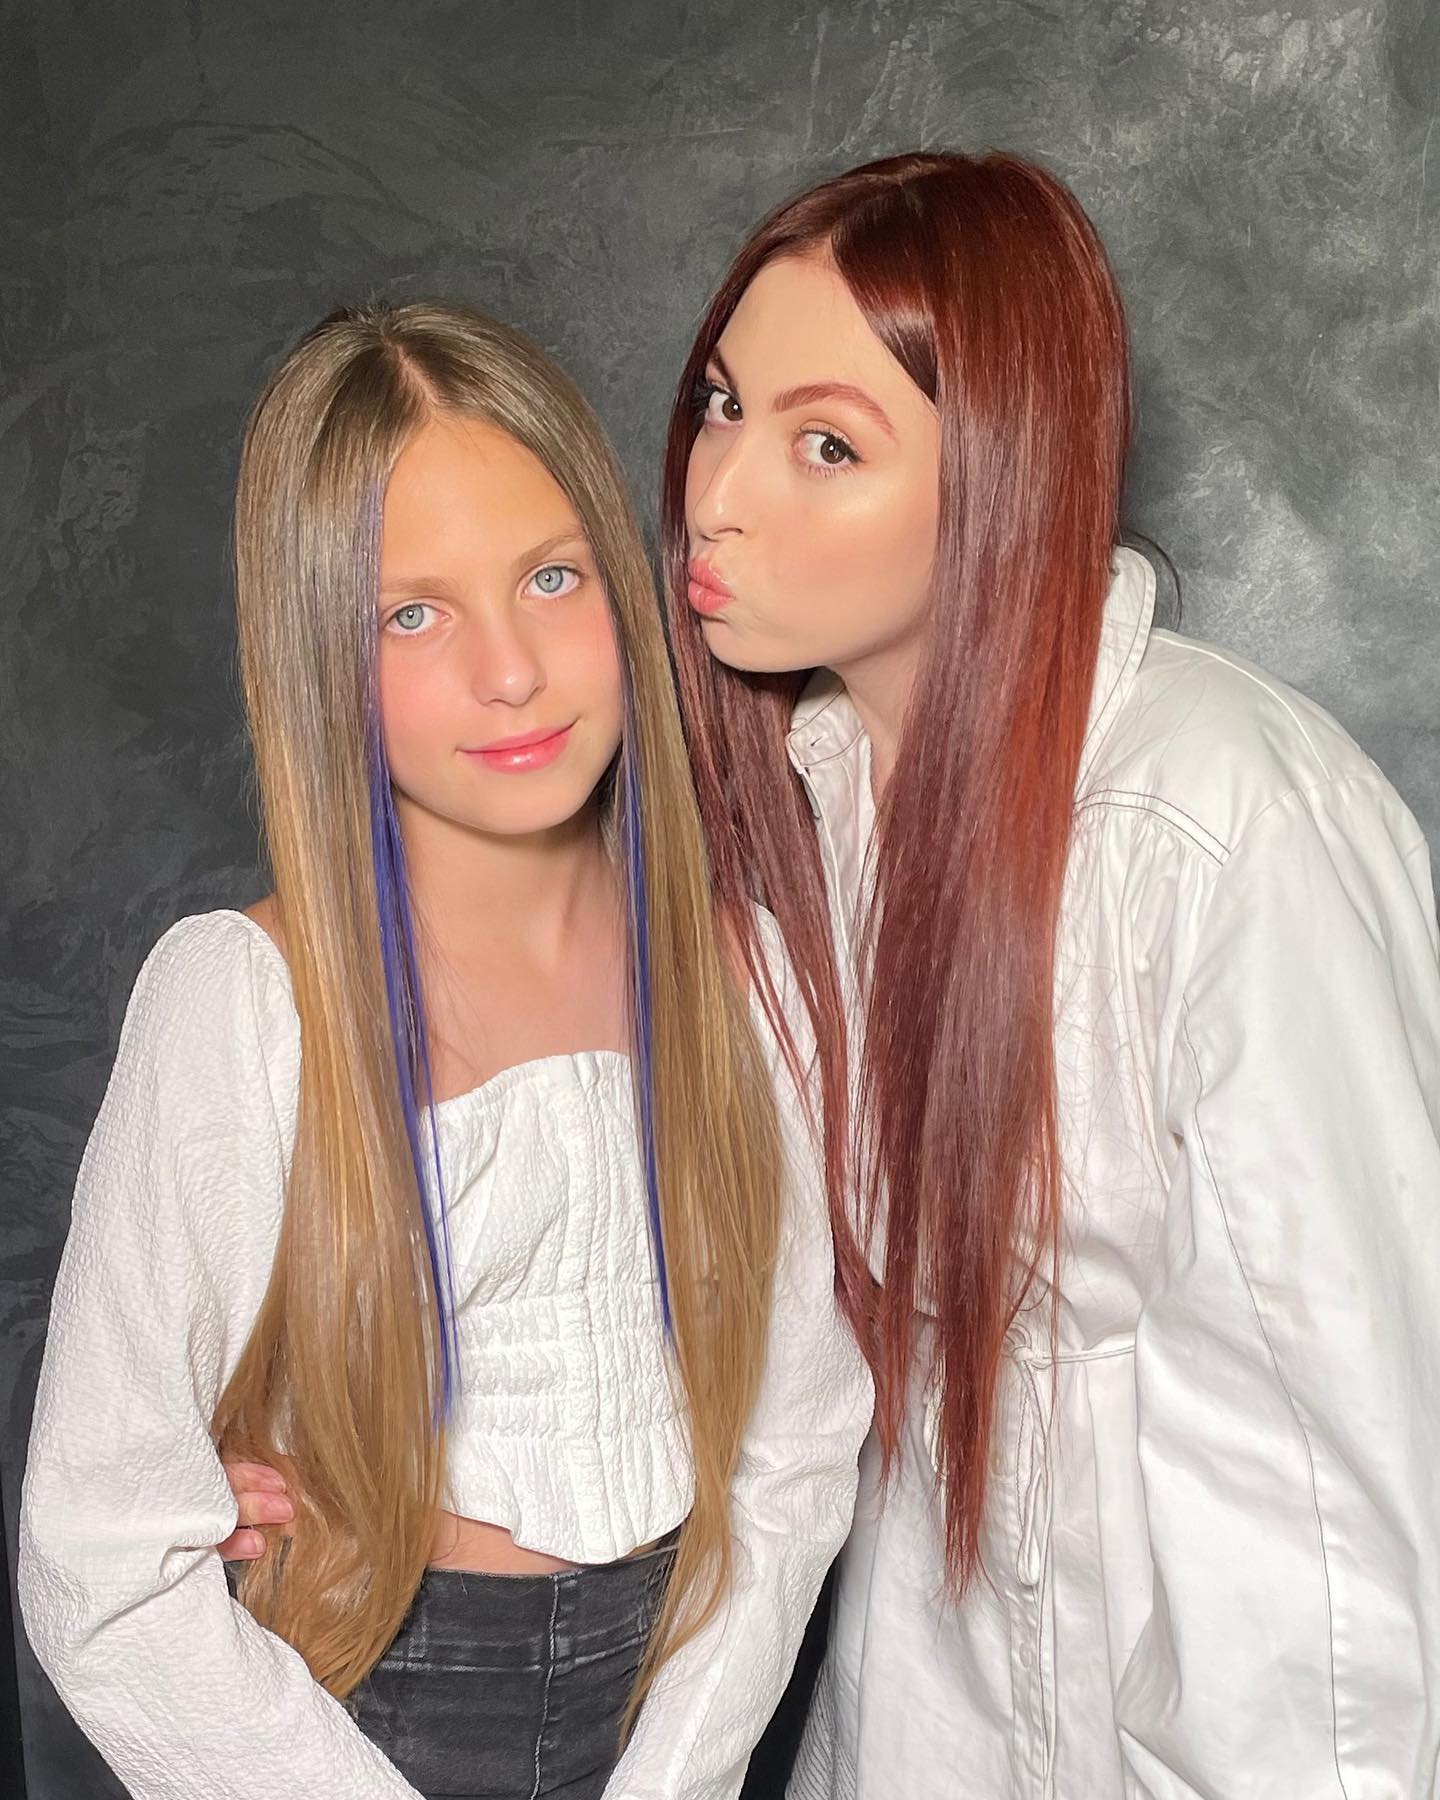 “Как будто от разных пап“: редкое фото подросших дочерей Оли Поляковой произвело фурор